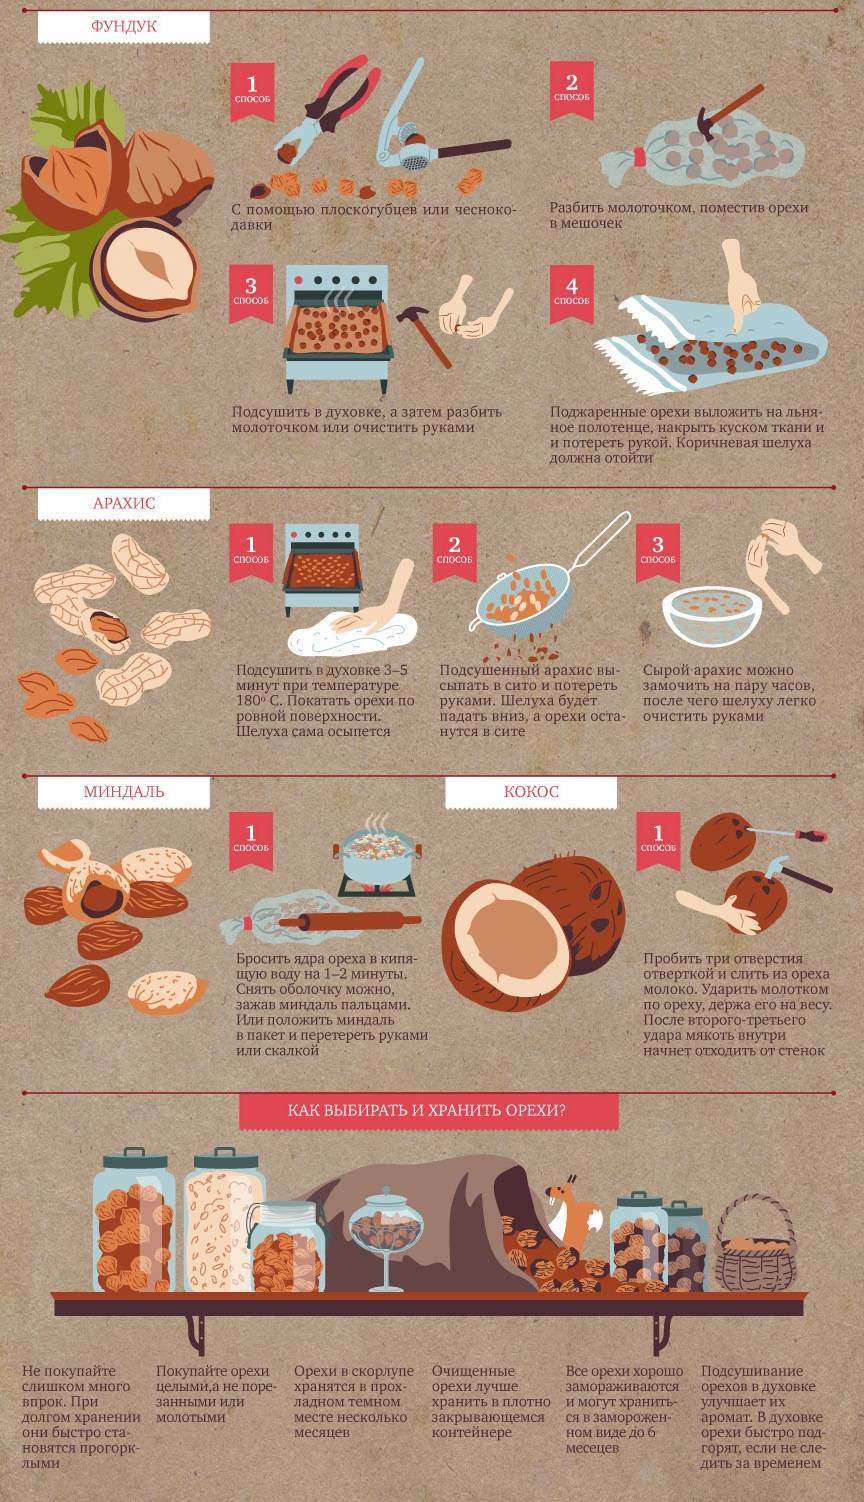 Как можно быстро очистить грецкие орехи?